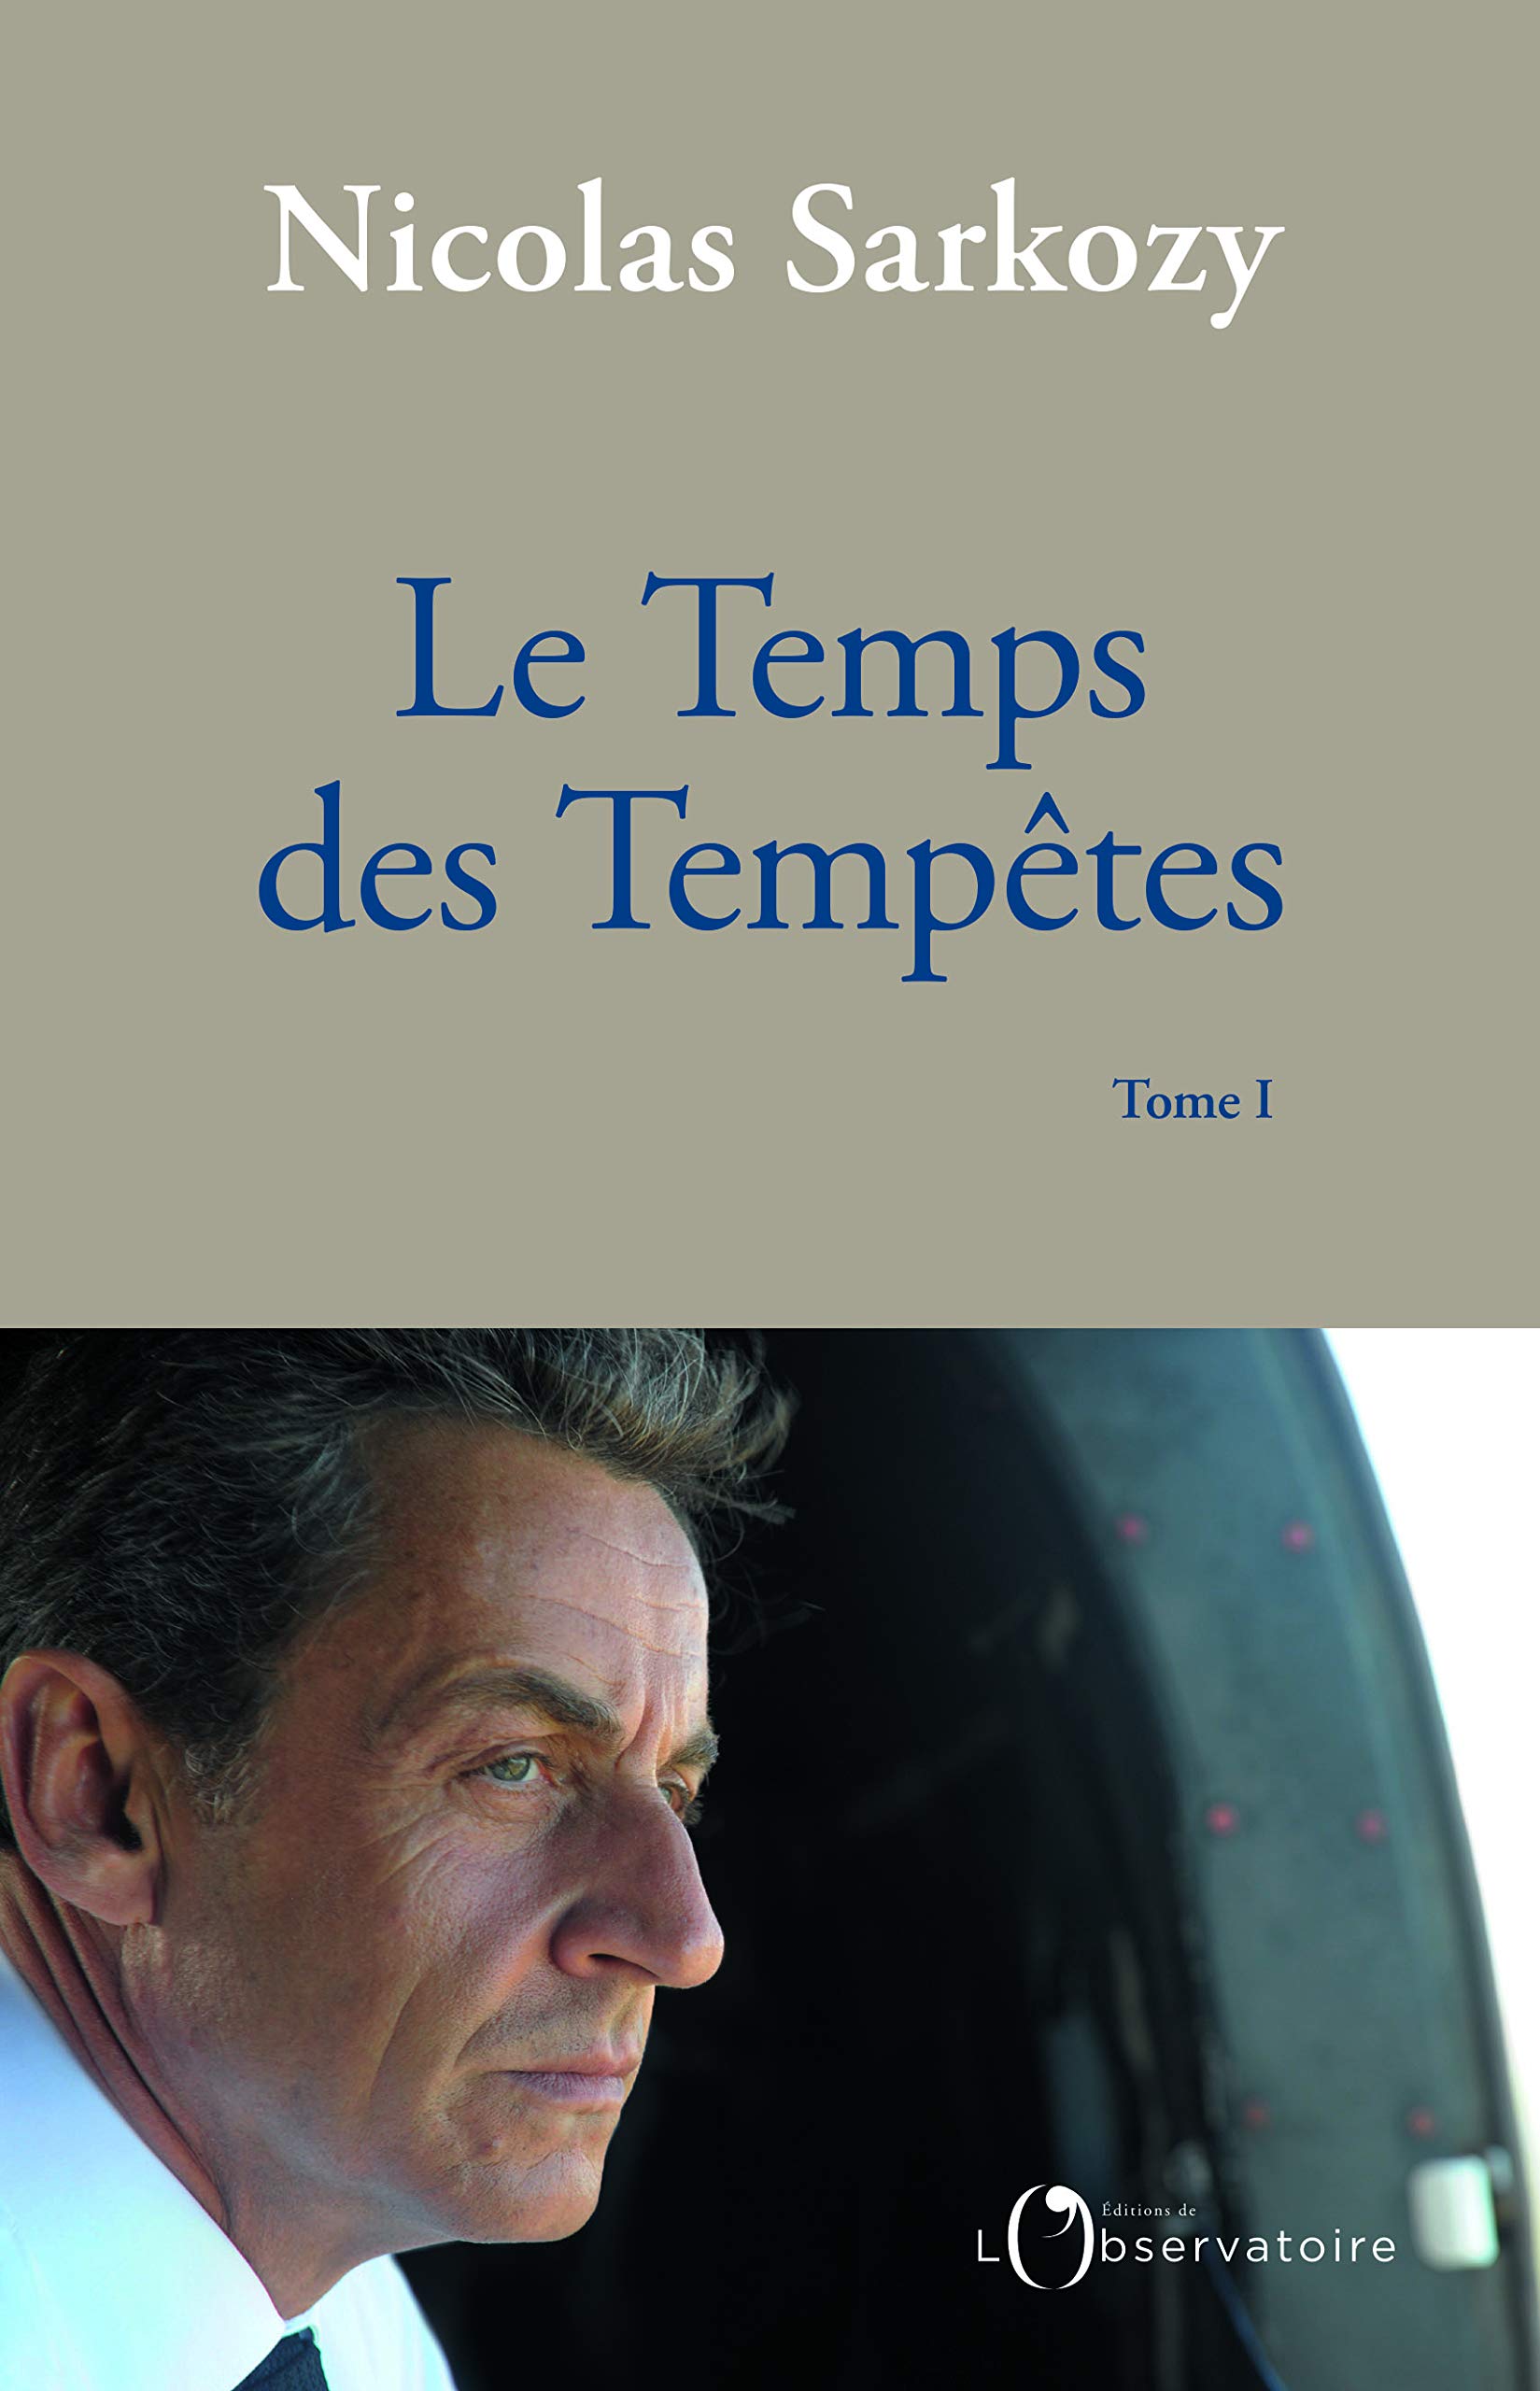 Nicolas Sarkozy : la jolie somme remportée grâce à son dernier livre